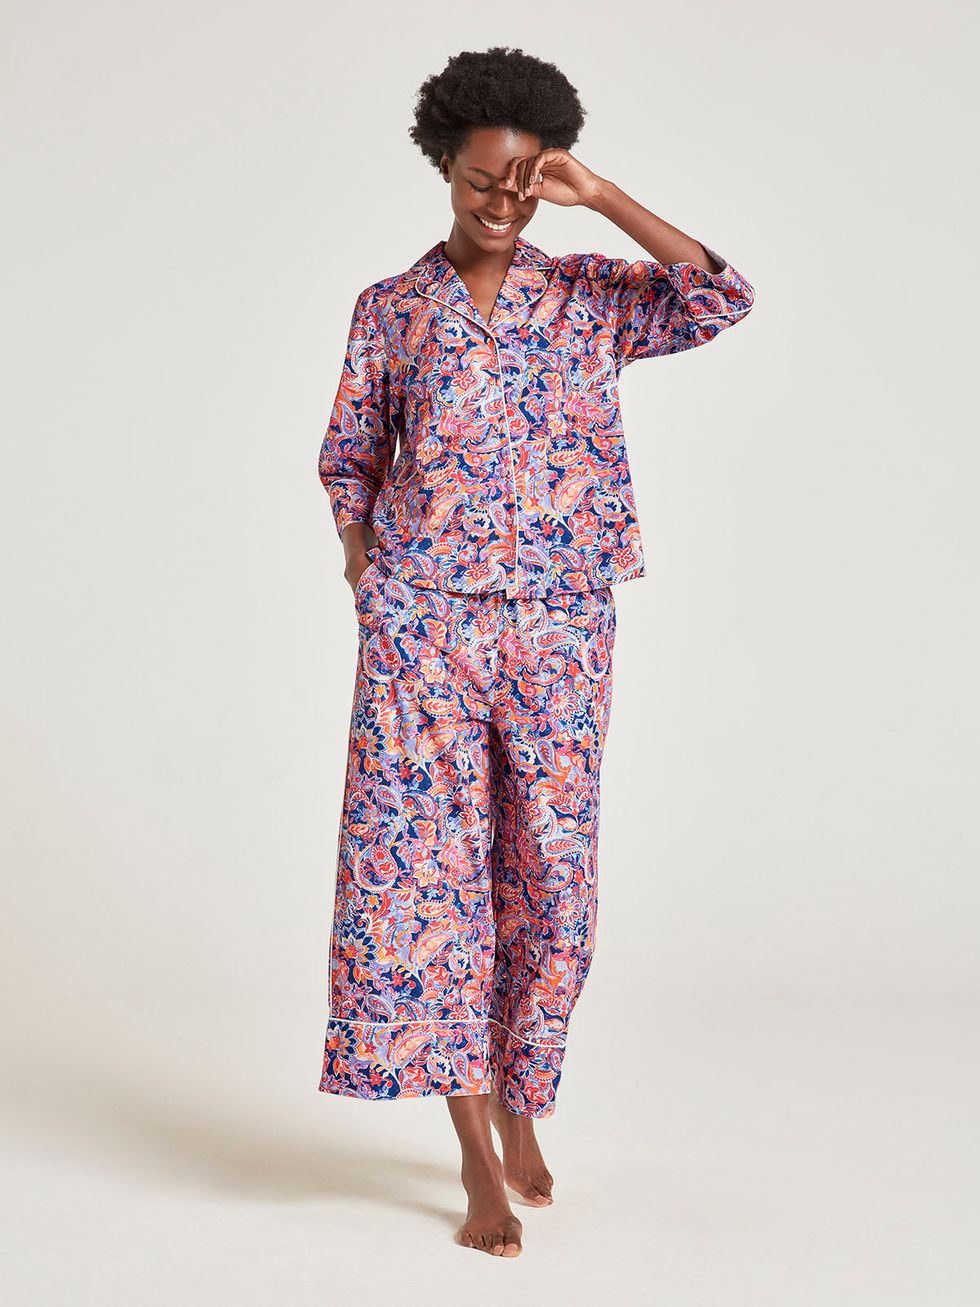 Pyjamas for Women: Buy Cotton Pyjamas for Women Online at Best